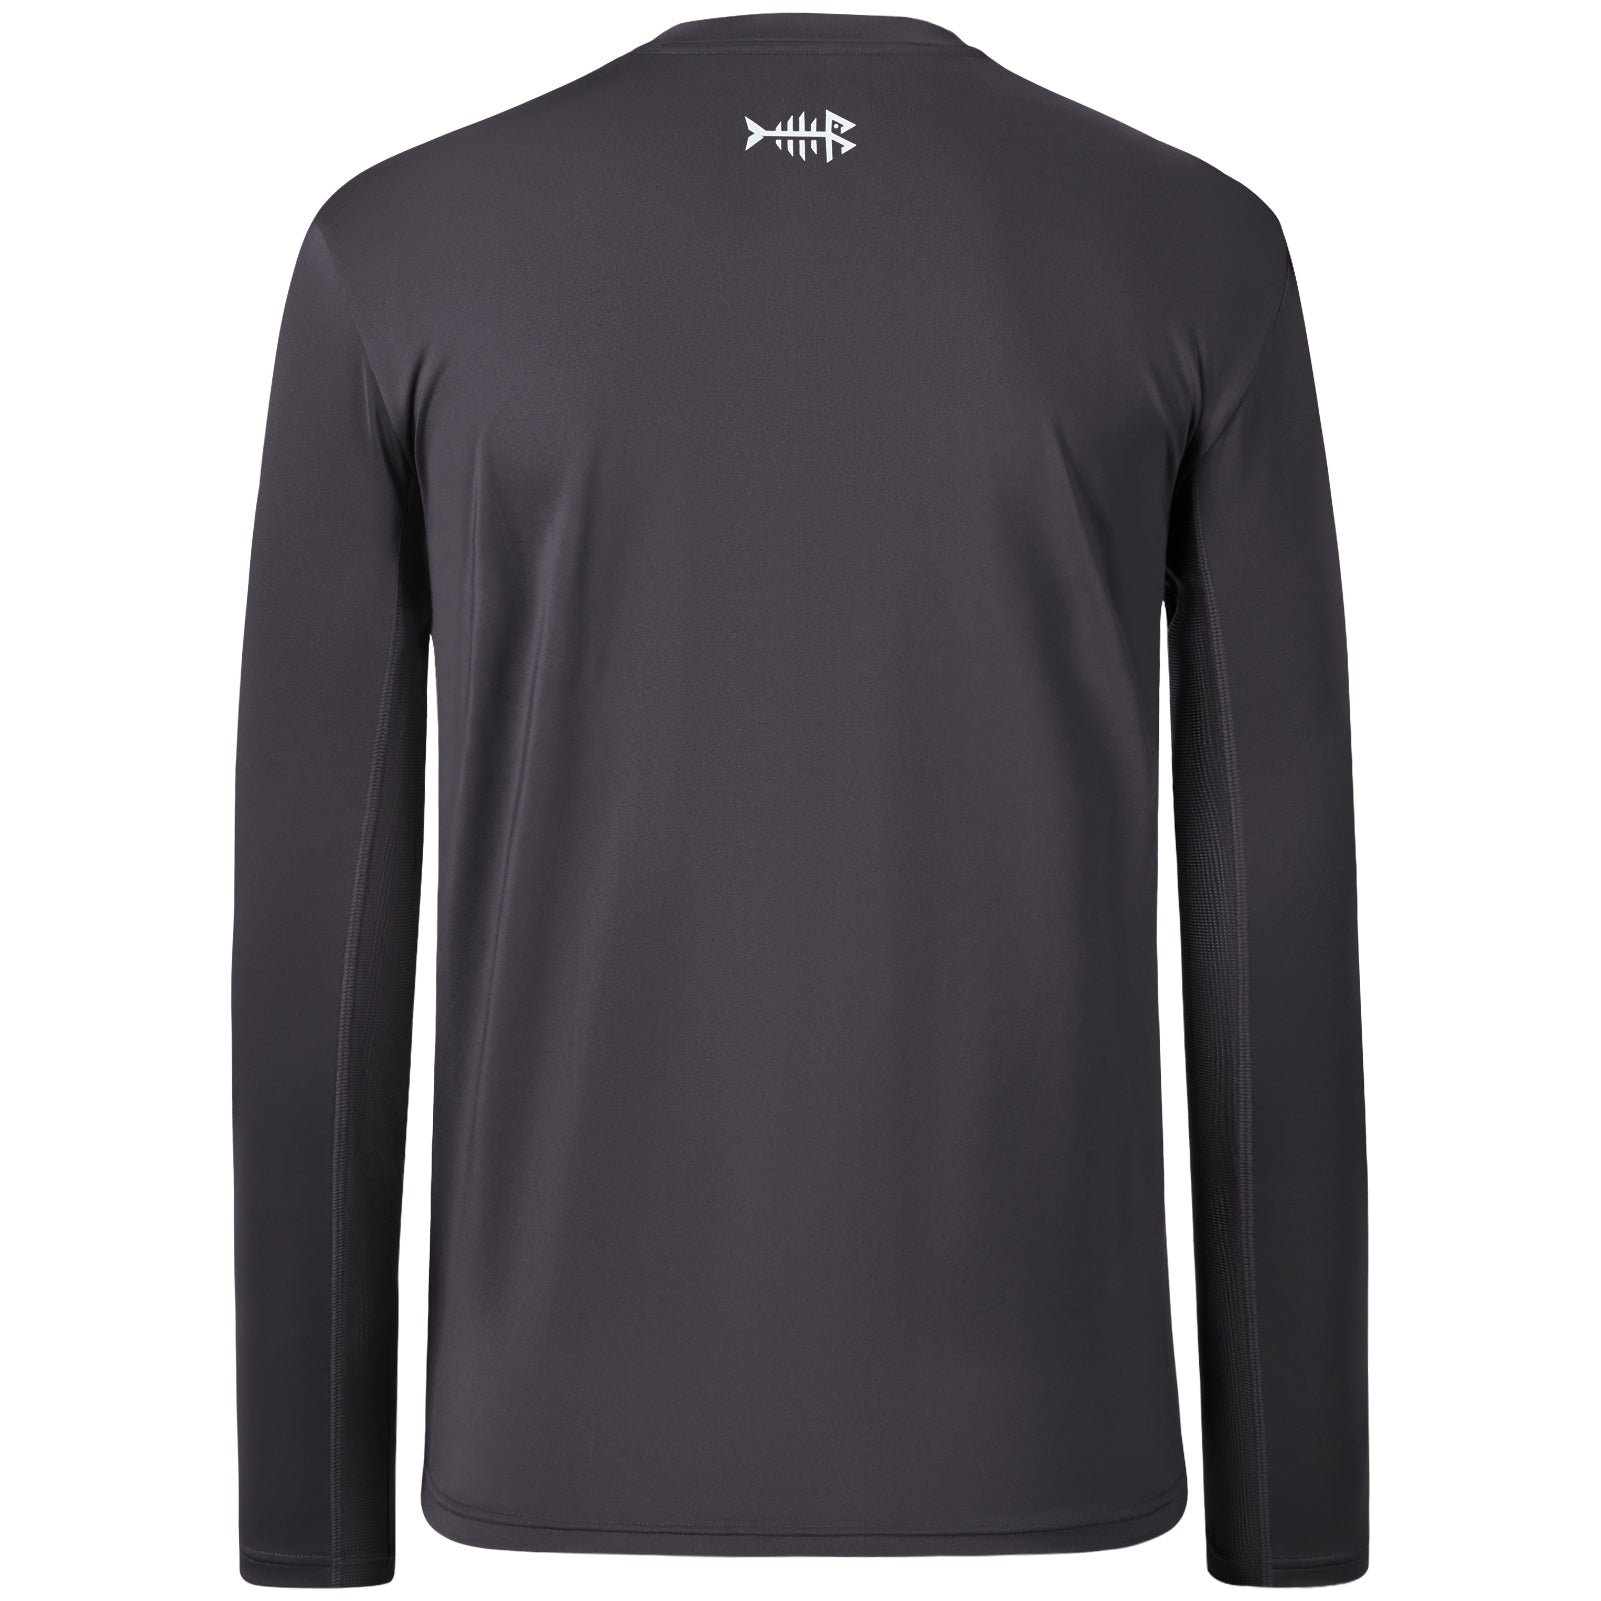 Hogfish UV T-Shirt: Mens UV Long Sleeve Protection Shirt - Fishing, Spearfishing